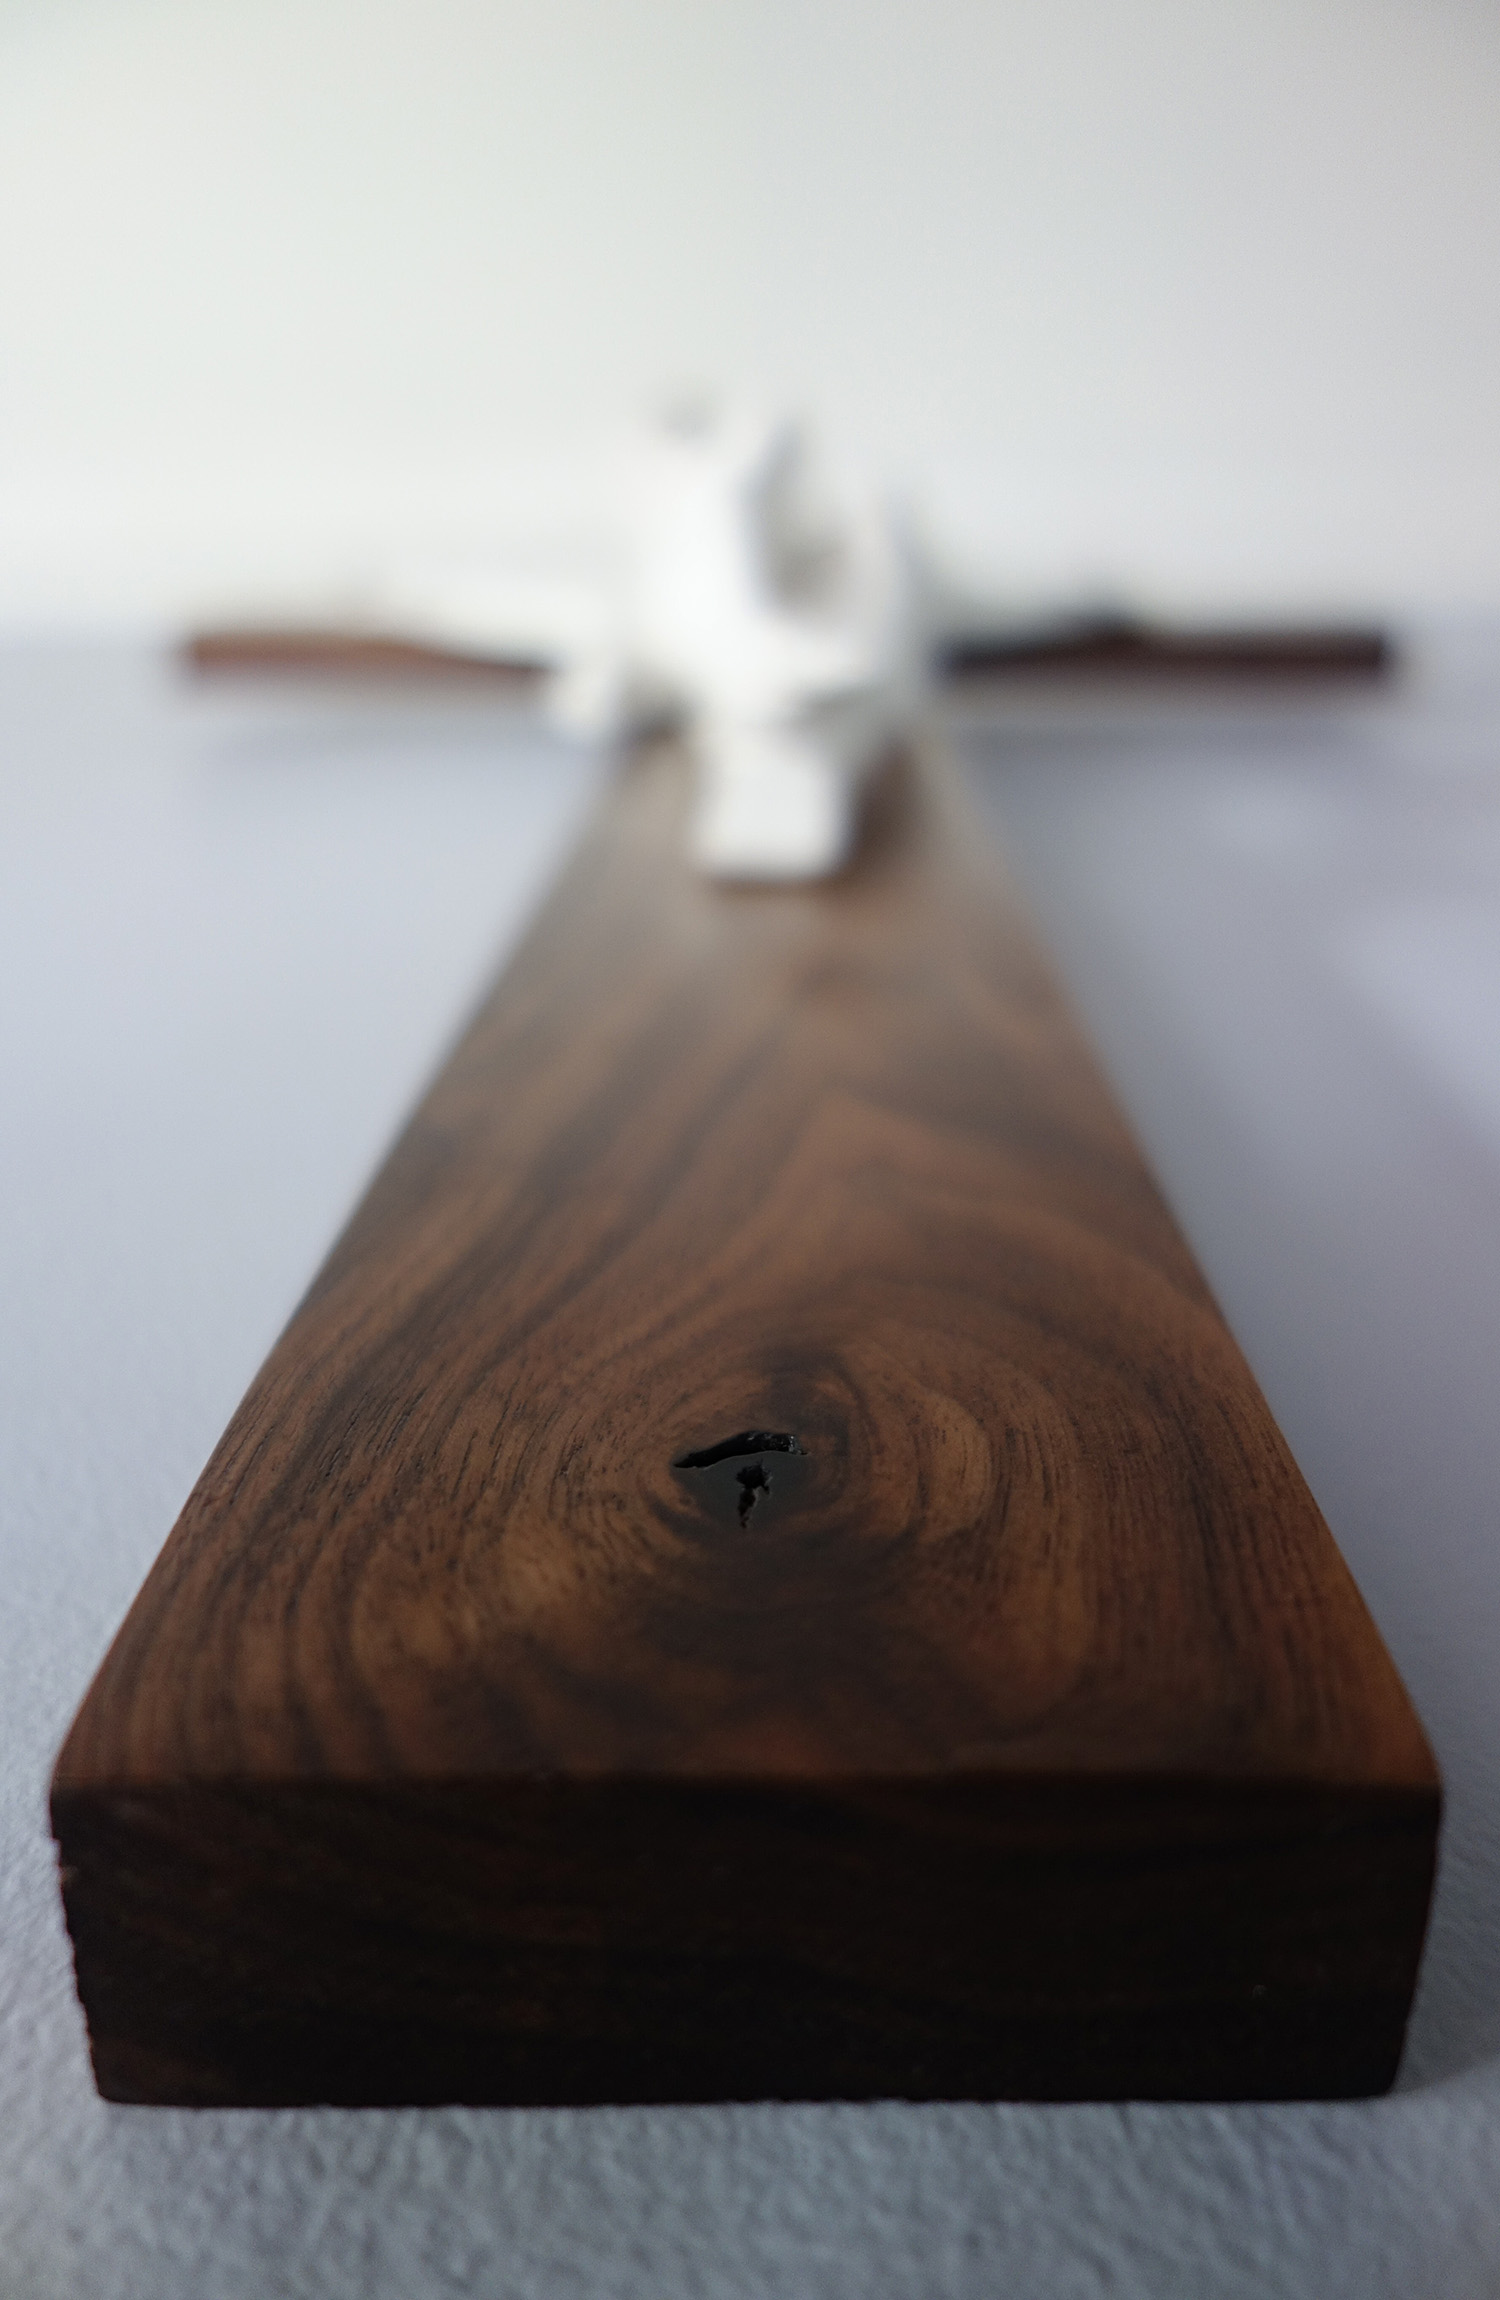 American Walnut Crucifix